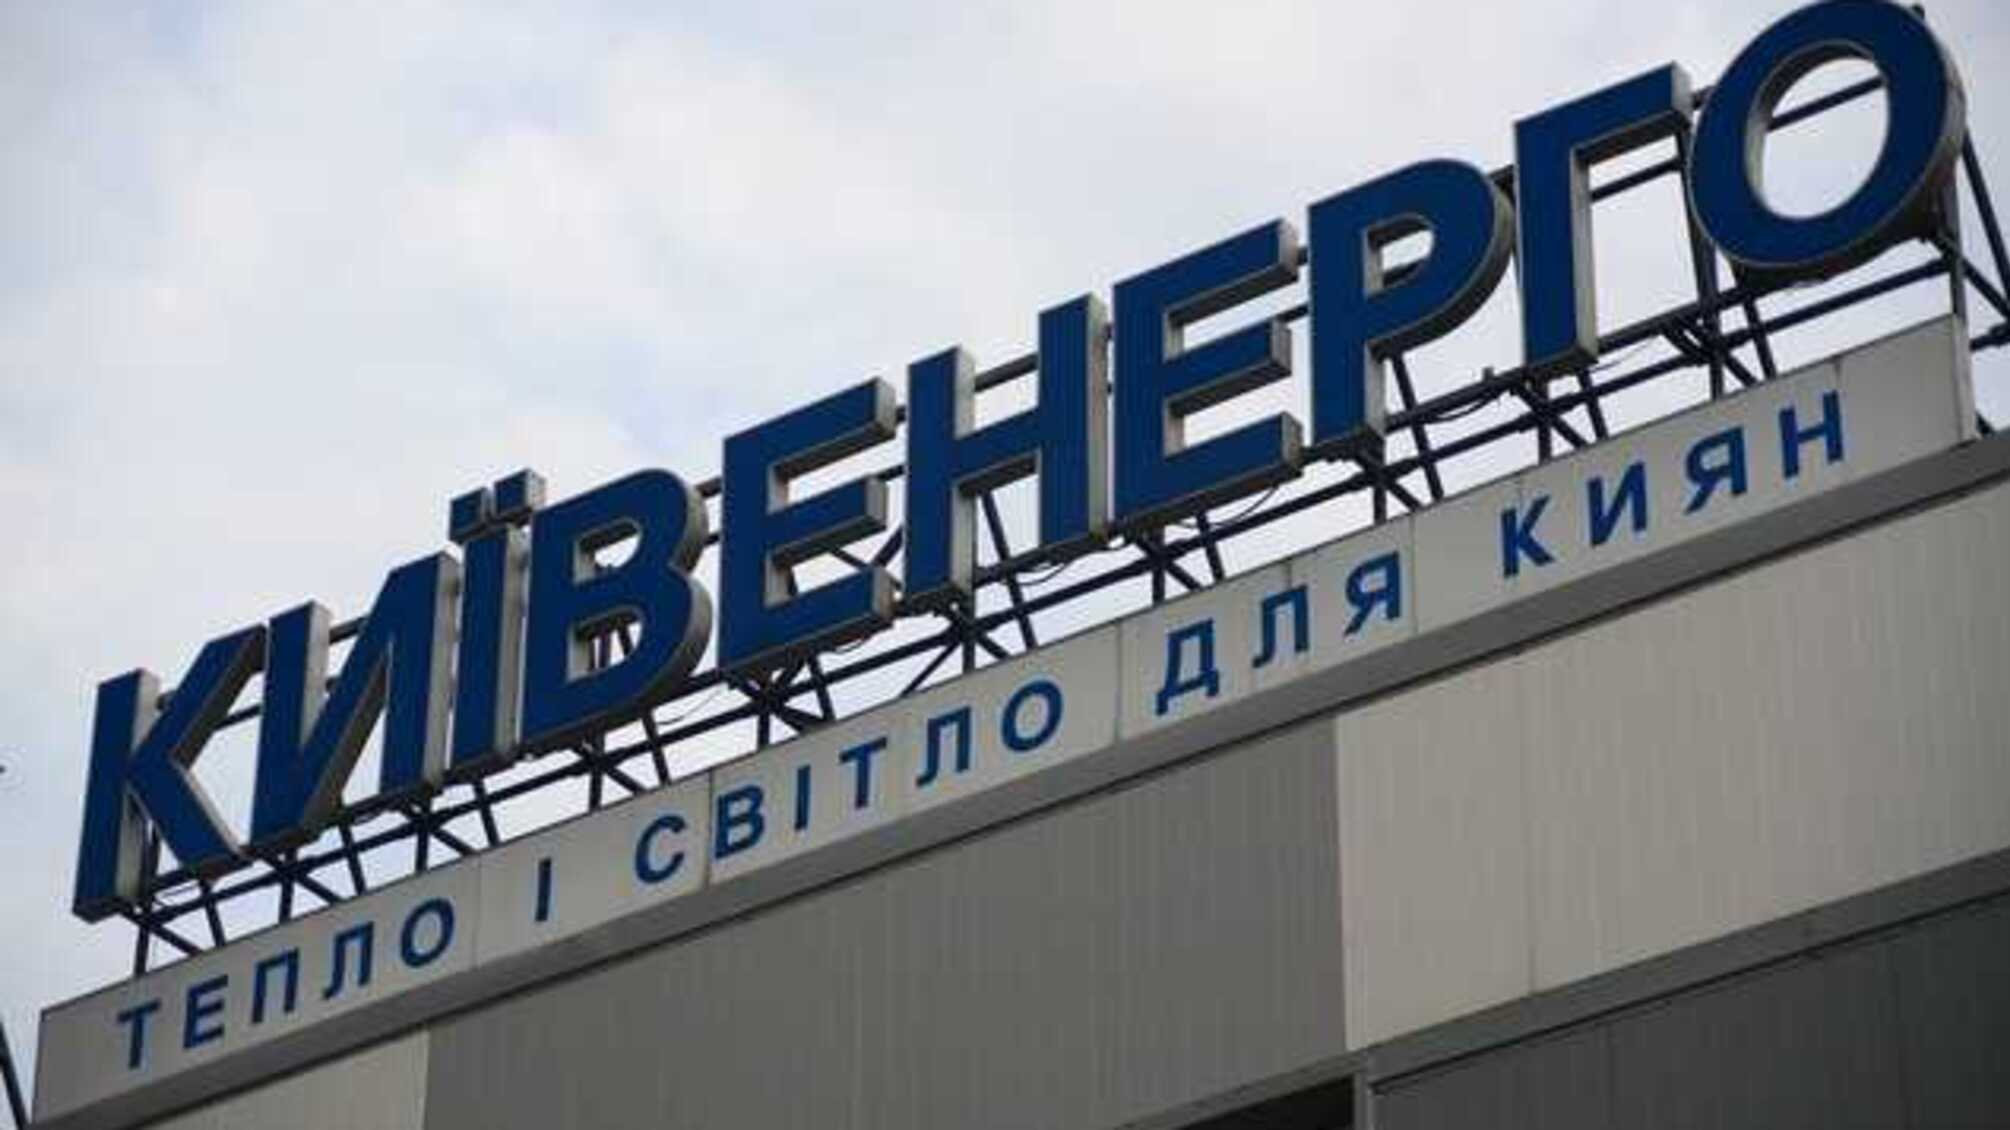 Начато дело о банкротстве «Киевэнерго» Ахметова